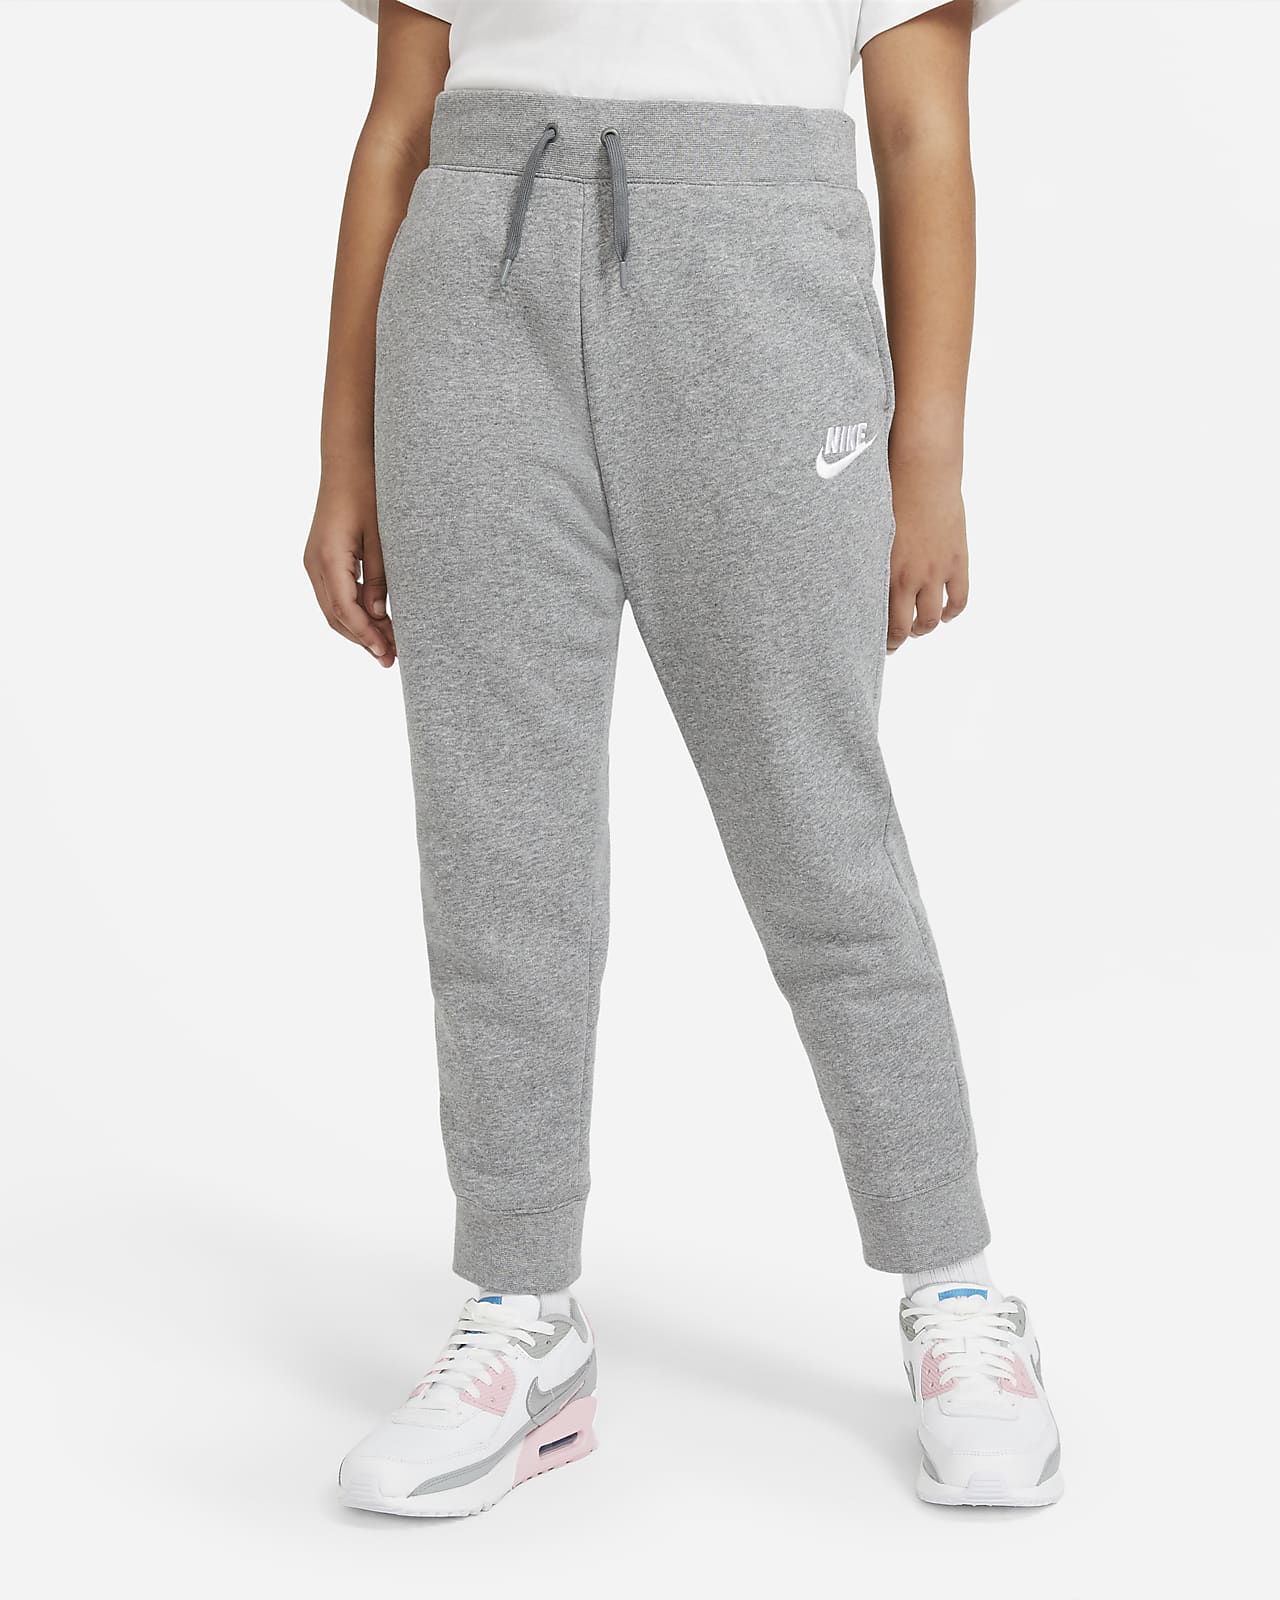 Nike Sportswear Older Kids' (Girls') Trousers (Extended Size). Nike GB